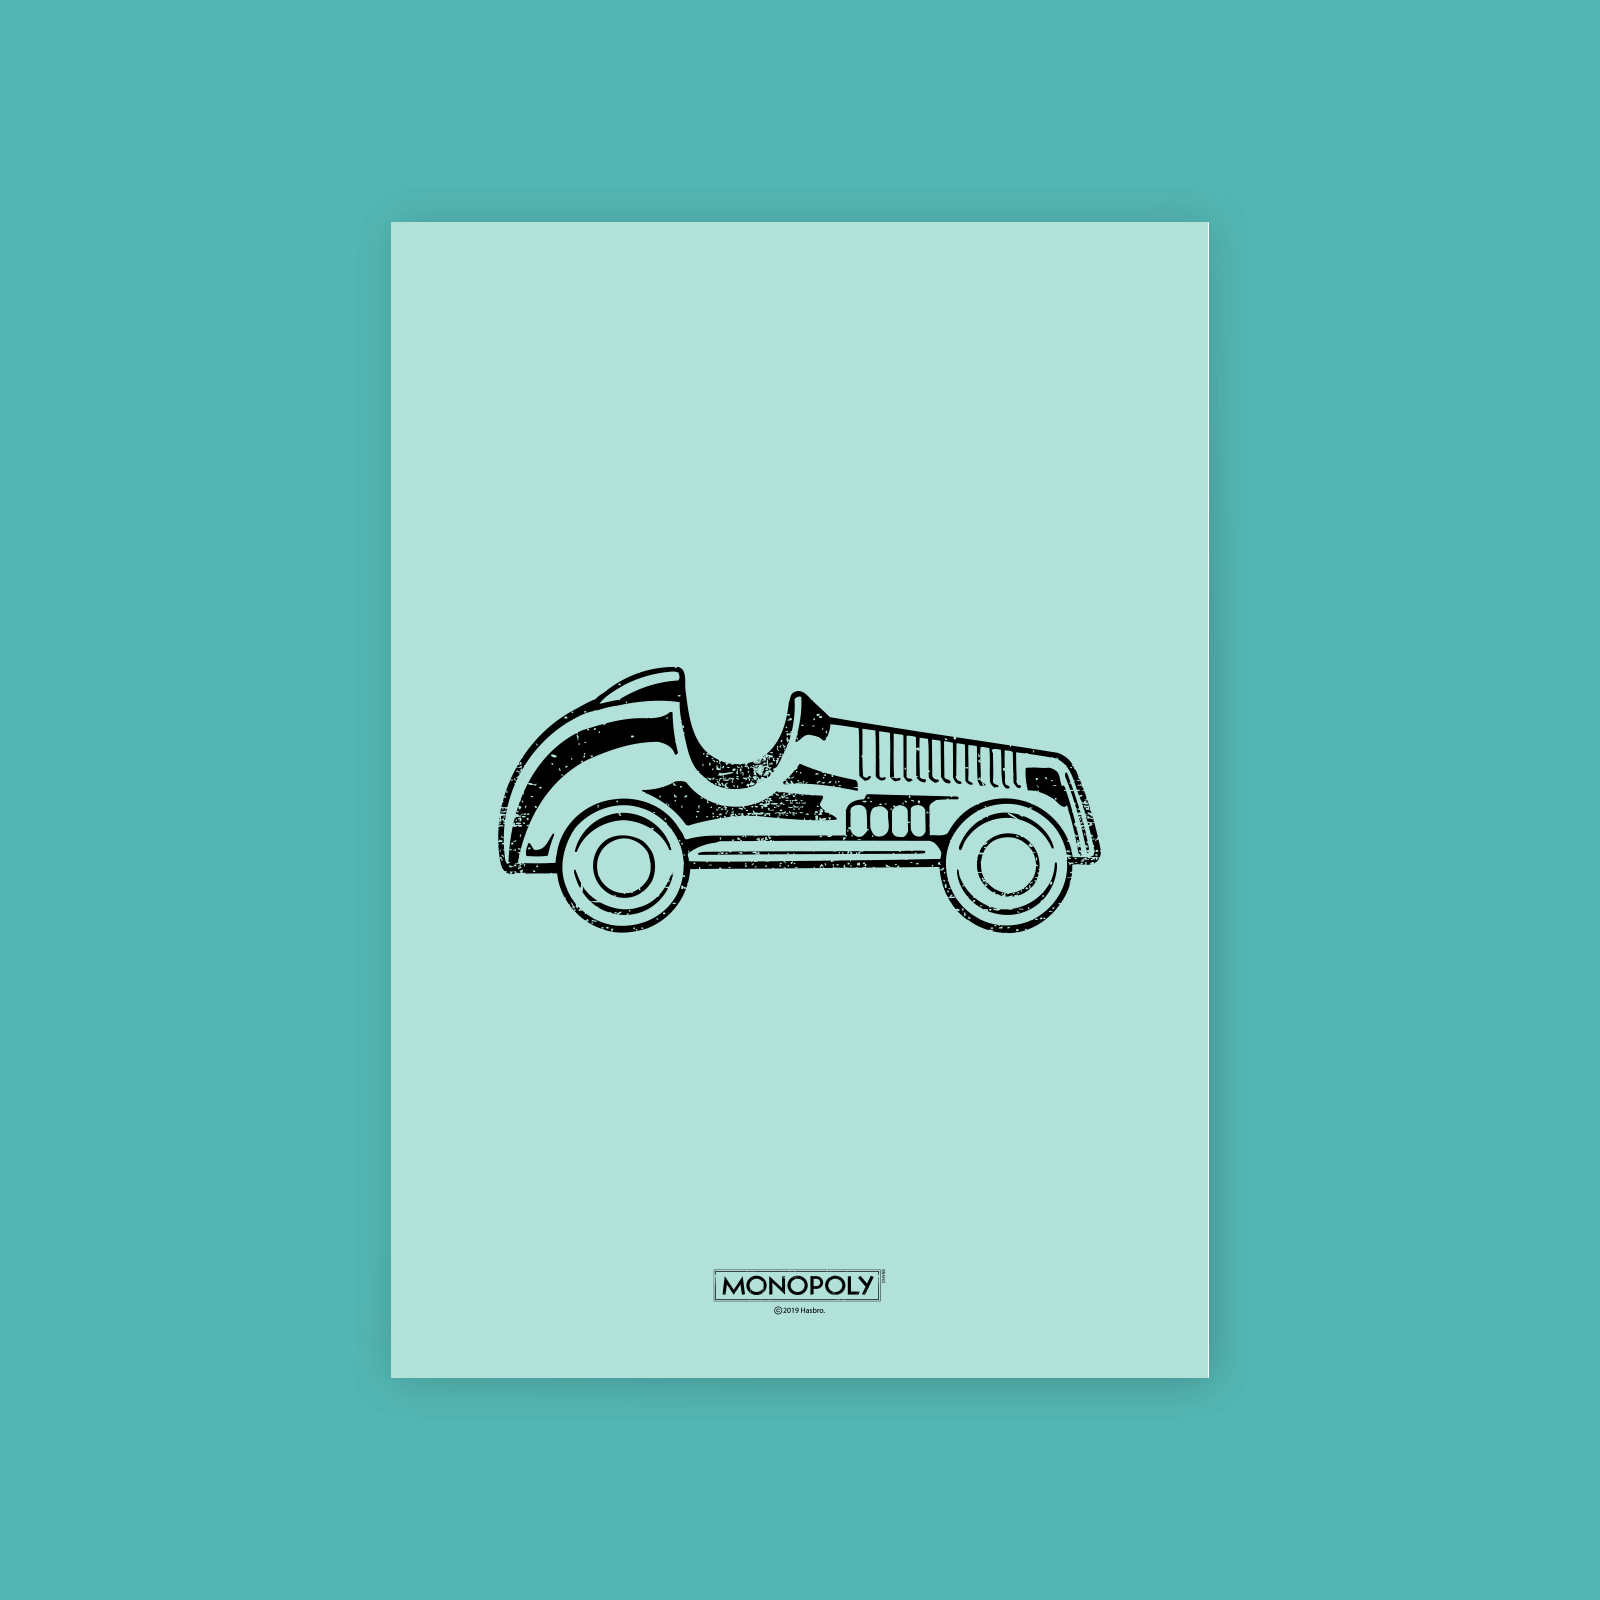 Monopoly Car Letterpress Art Print - A4